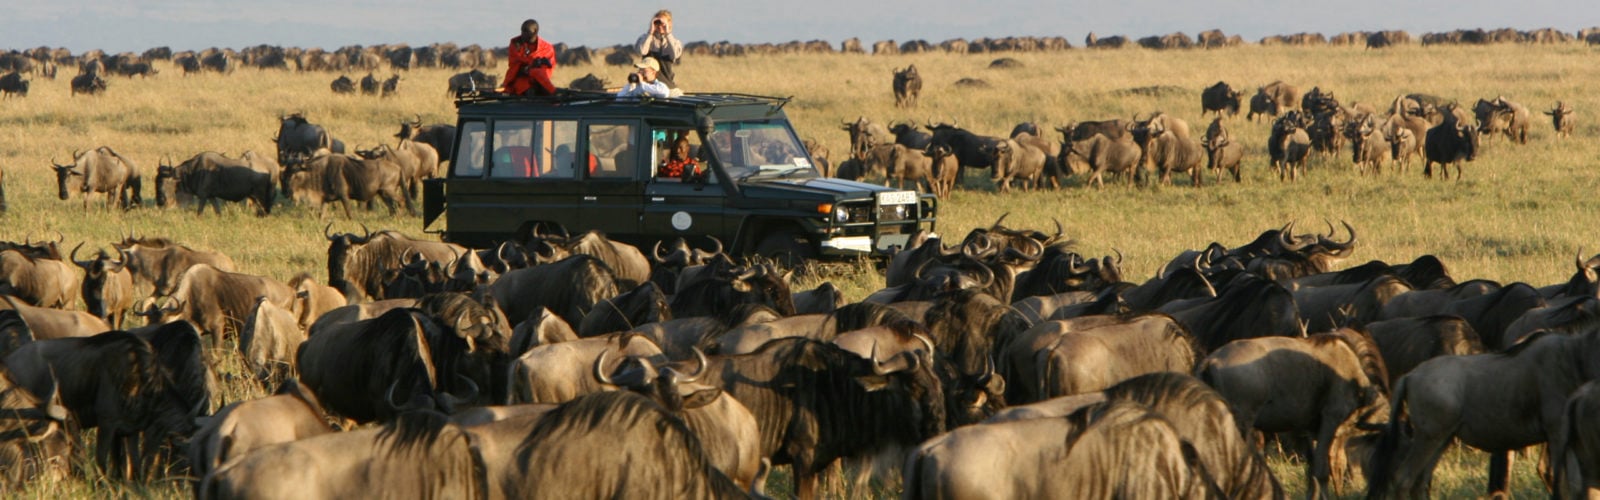 rekero-camp-safari